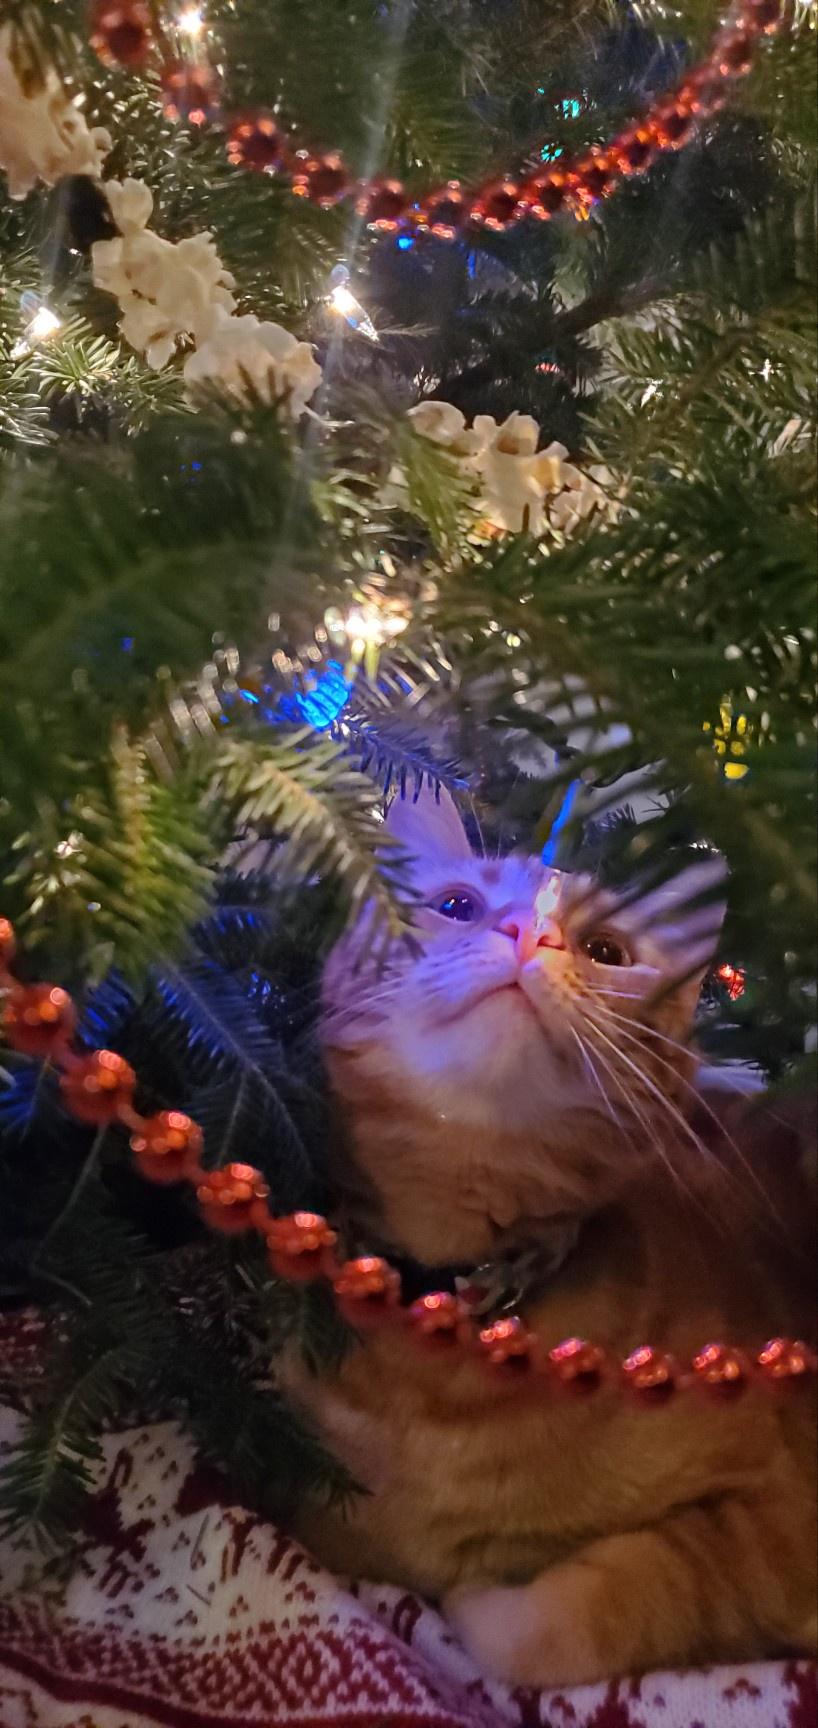 RHM Freddy being helpful under the tree